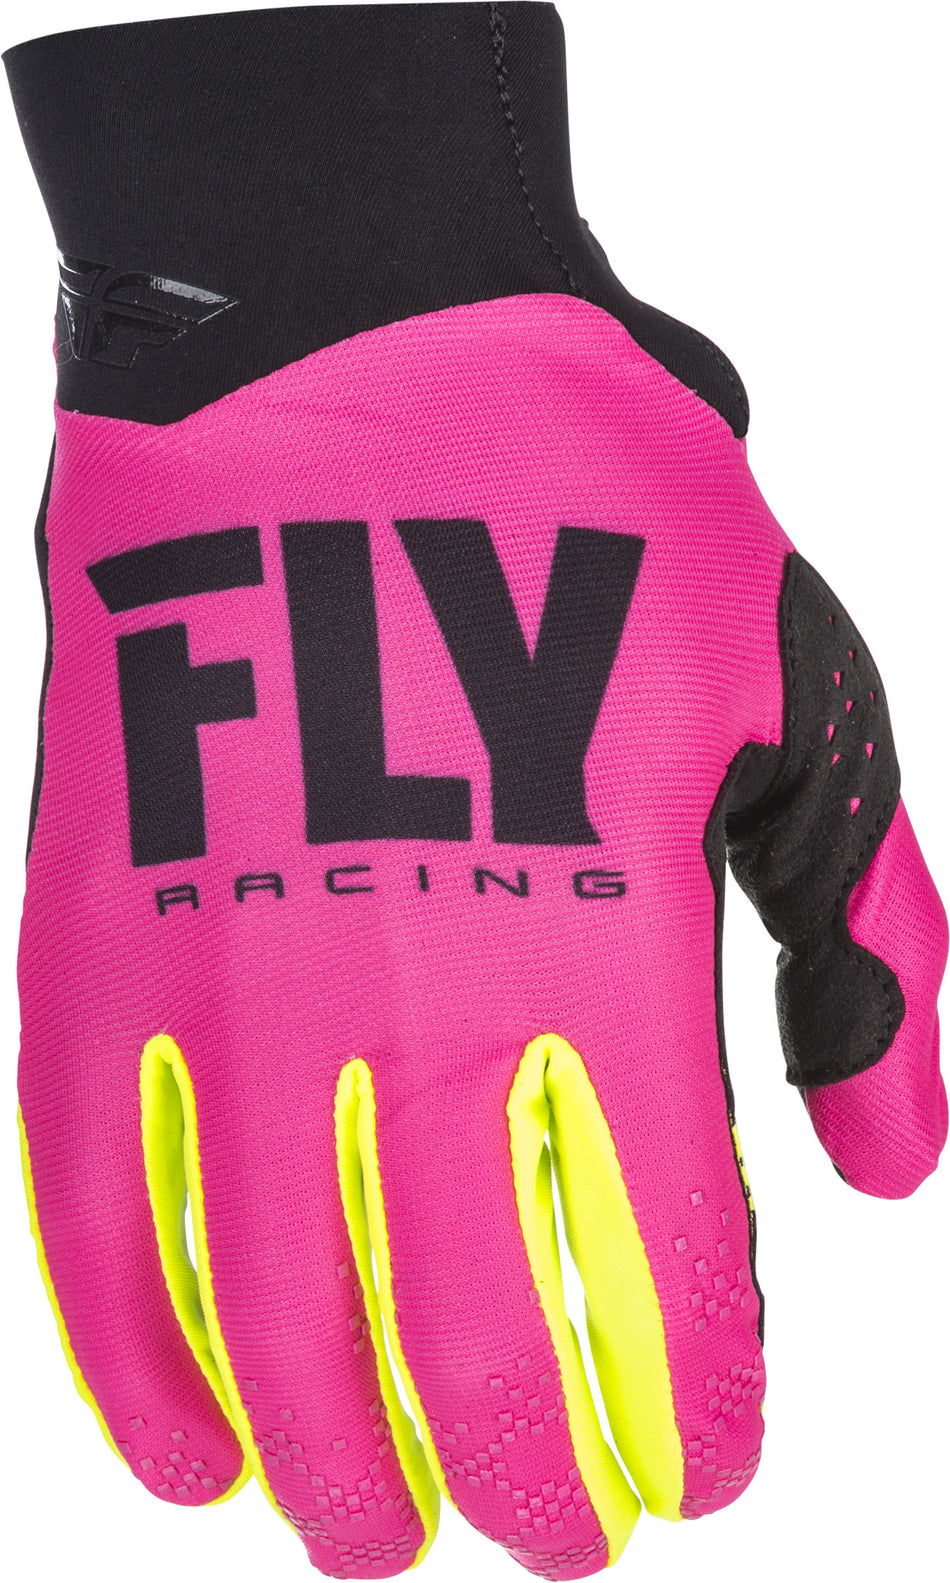 FLY RACING Pro Lite Gloves Neon Pink/Hi-Vis Sz 7 371-81707